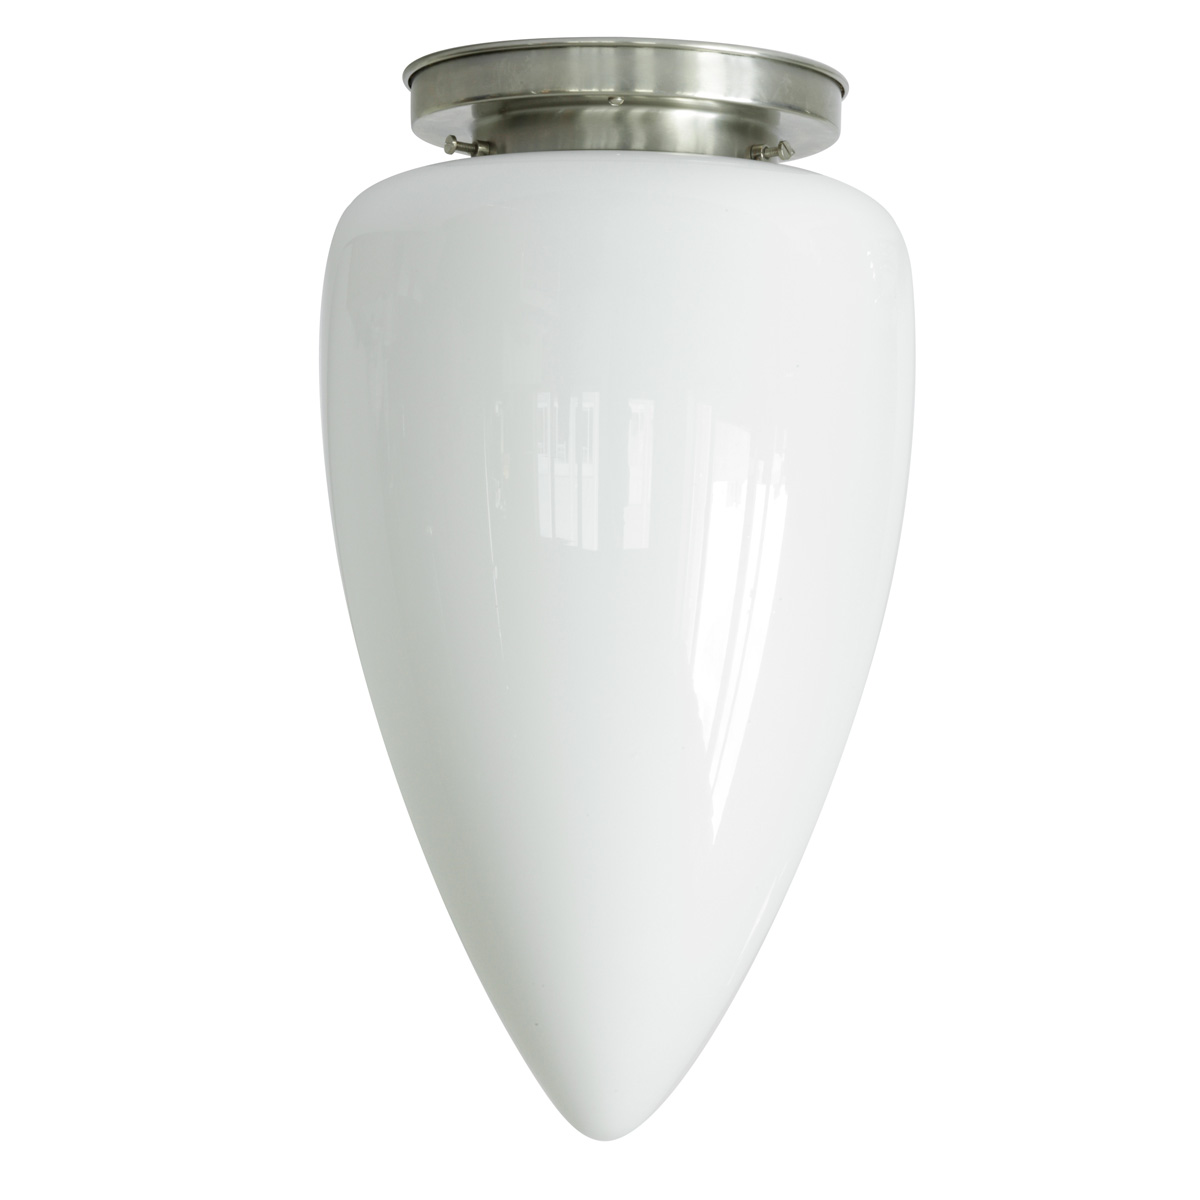 Deckenleuchte mit langem weißen Spitzglas Ø 24 cm: Opalglas-Deckenleuchte, abgebildet mit Deckenteil in Messing mattvernickelt